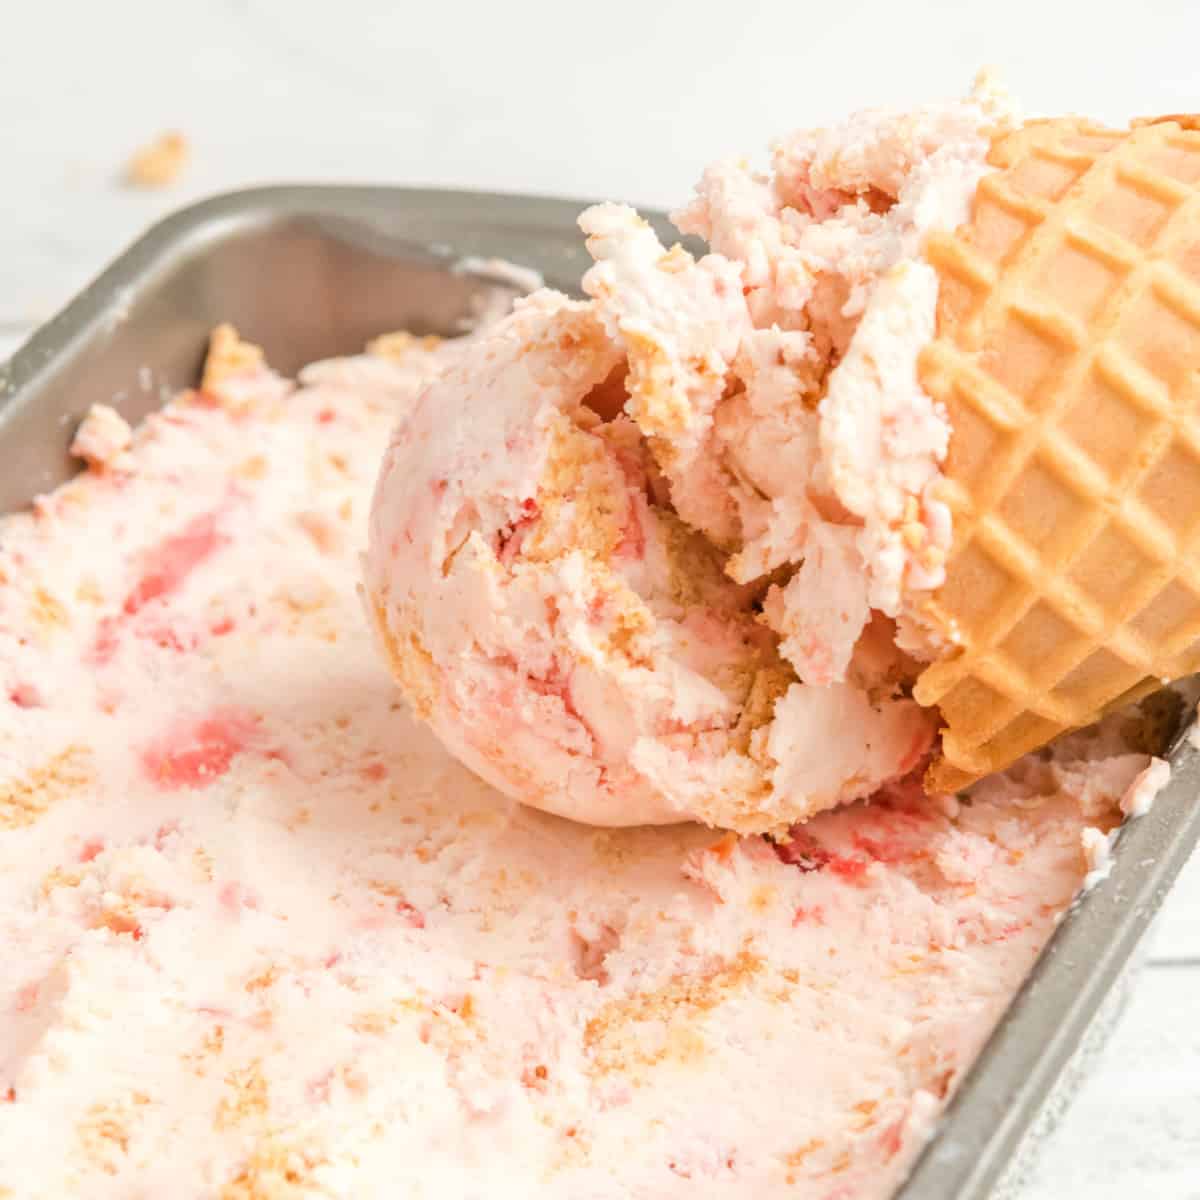 Ice cream cone laid in a container of ice cream. 